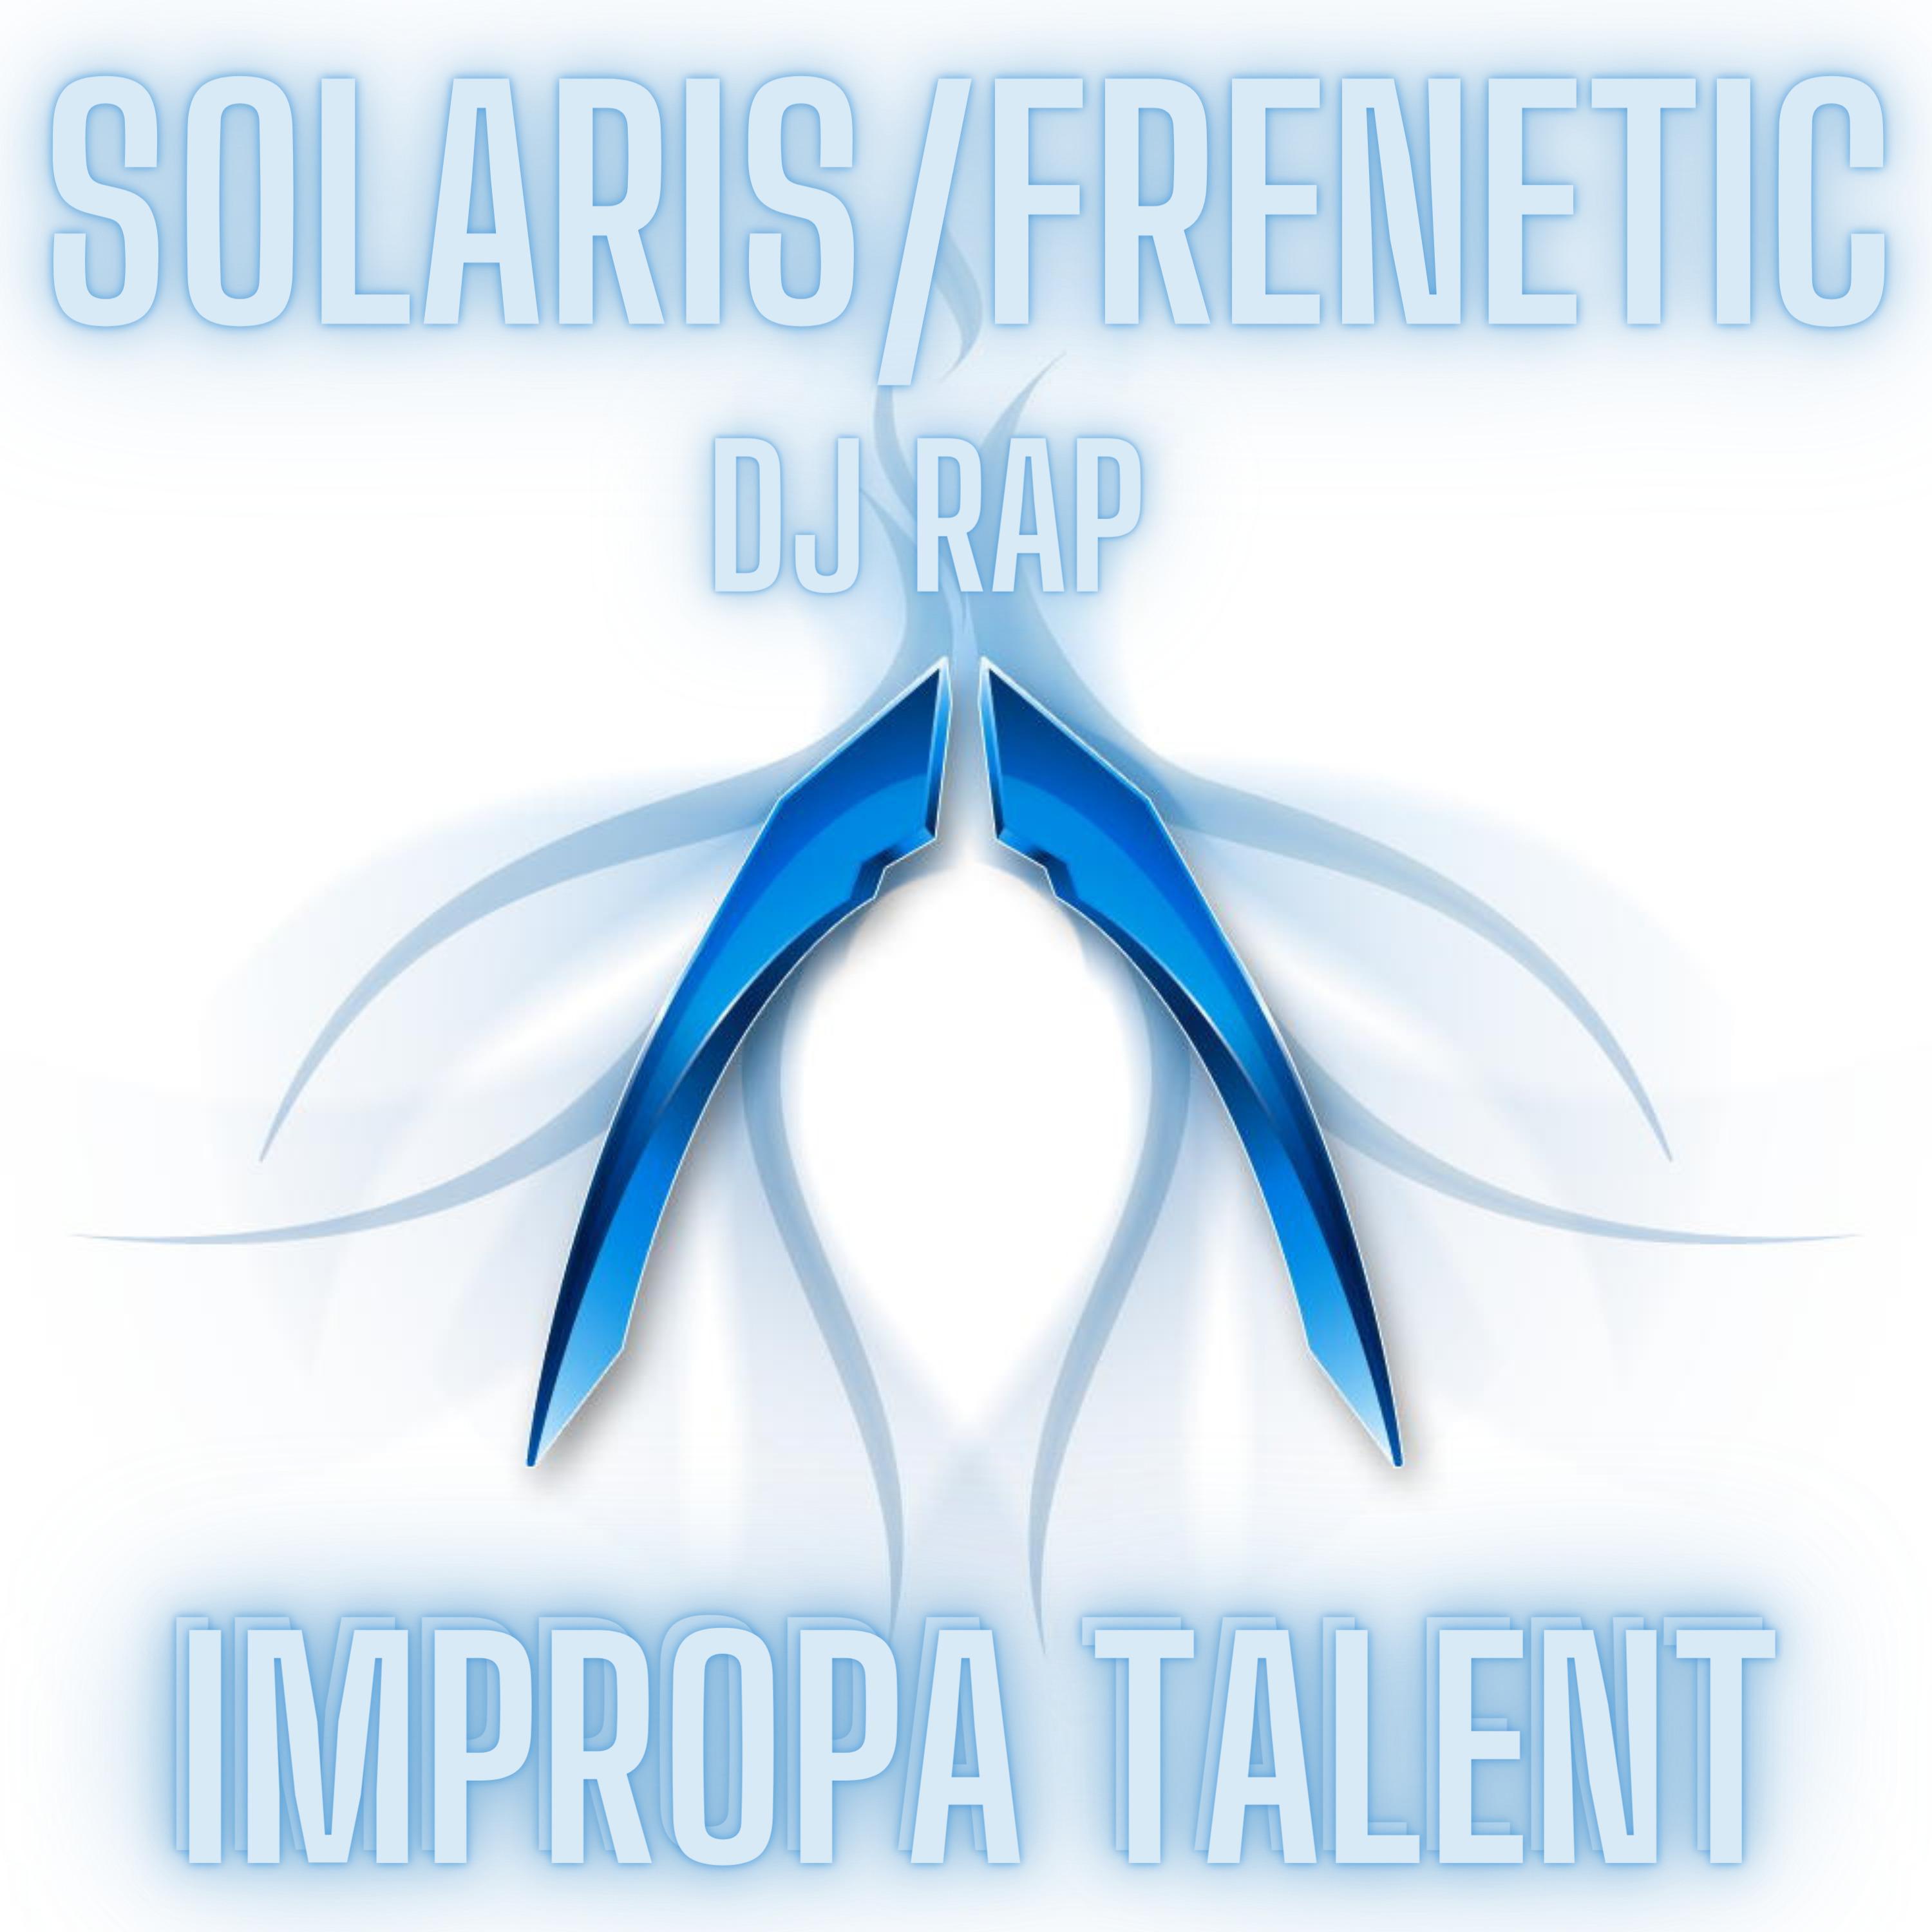 Solaris / Frenetic